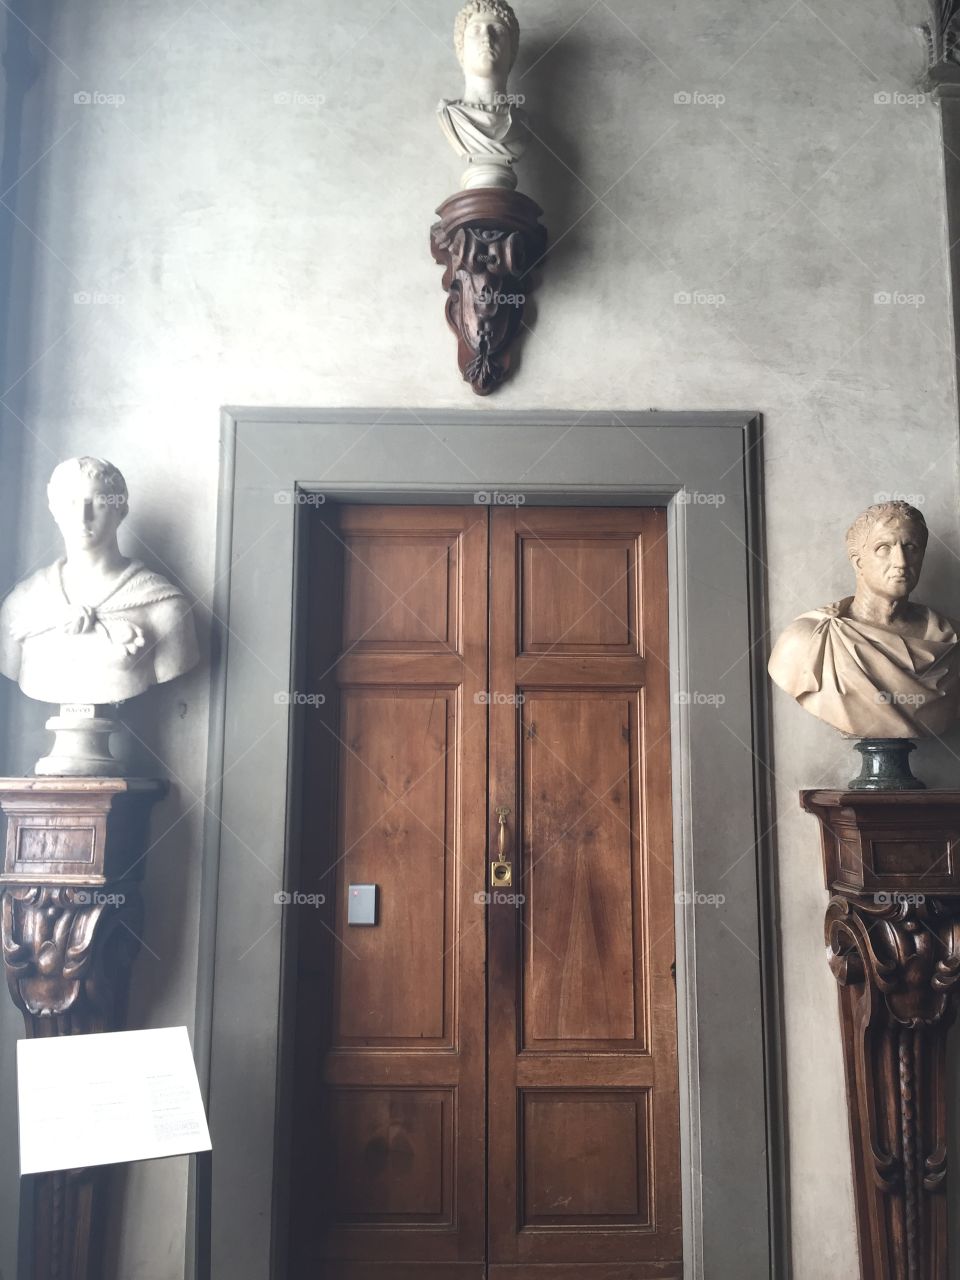 Inside the Uffizi Gallery, Florence